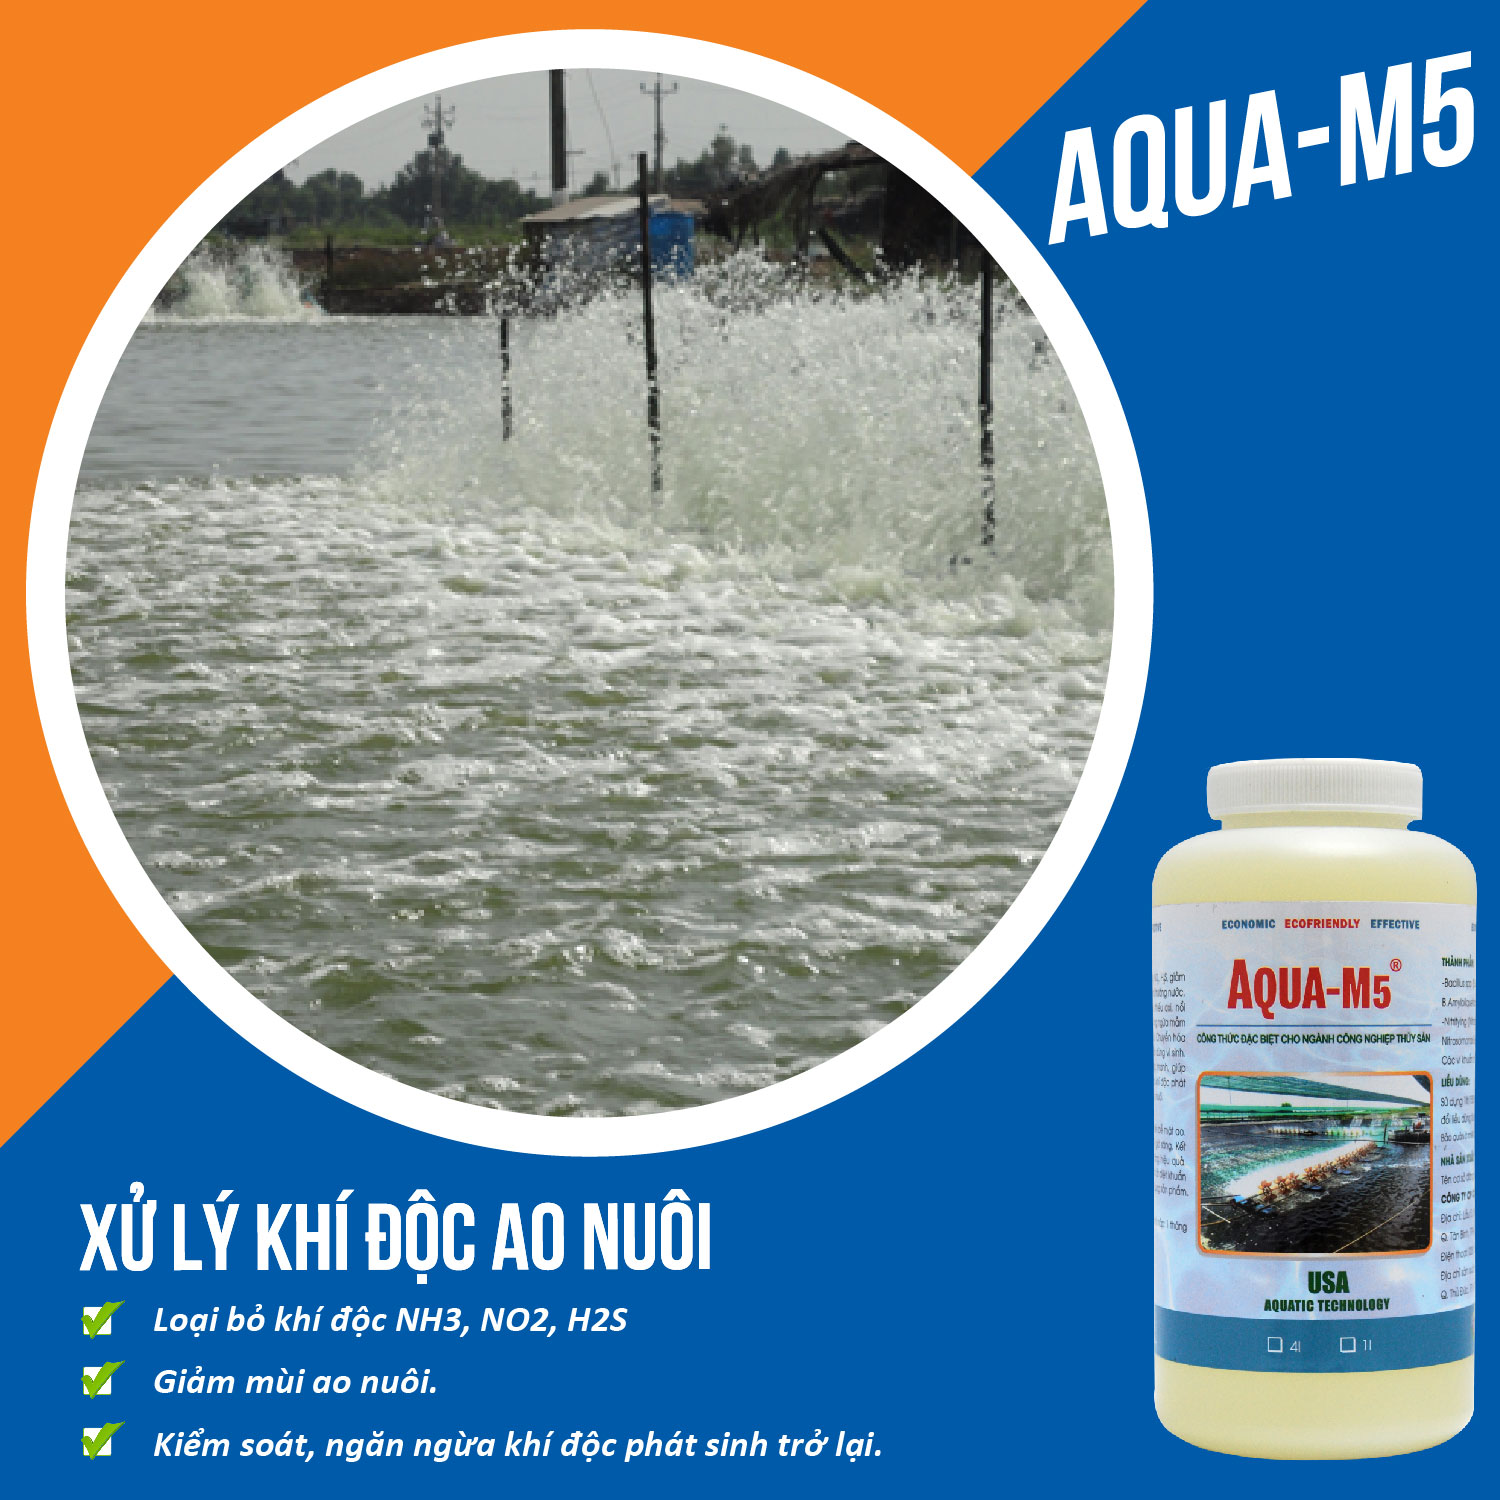 AQUA M5 Vi sinh xử lý khí độc trong ao nuôi thủy sản - Chai 1 lít